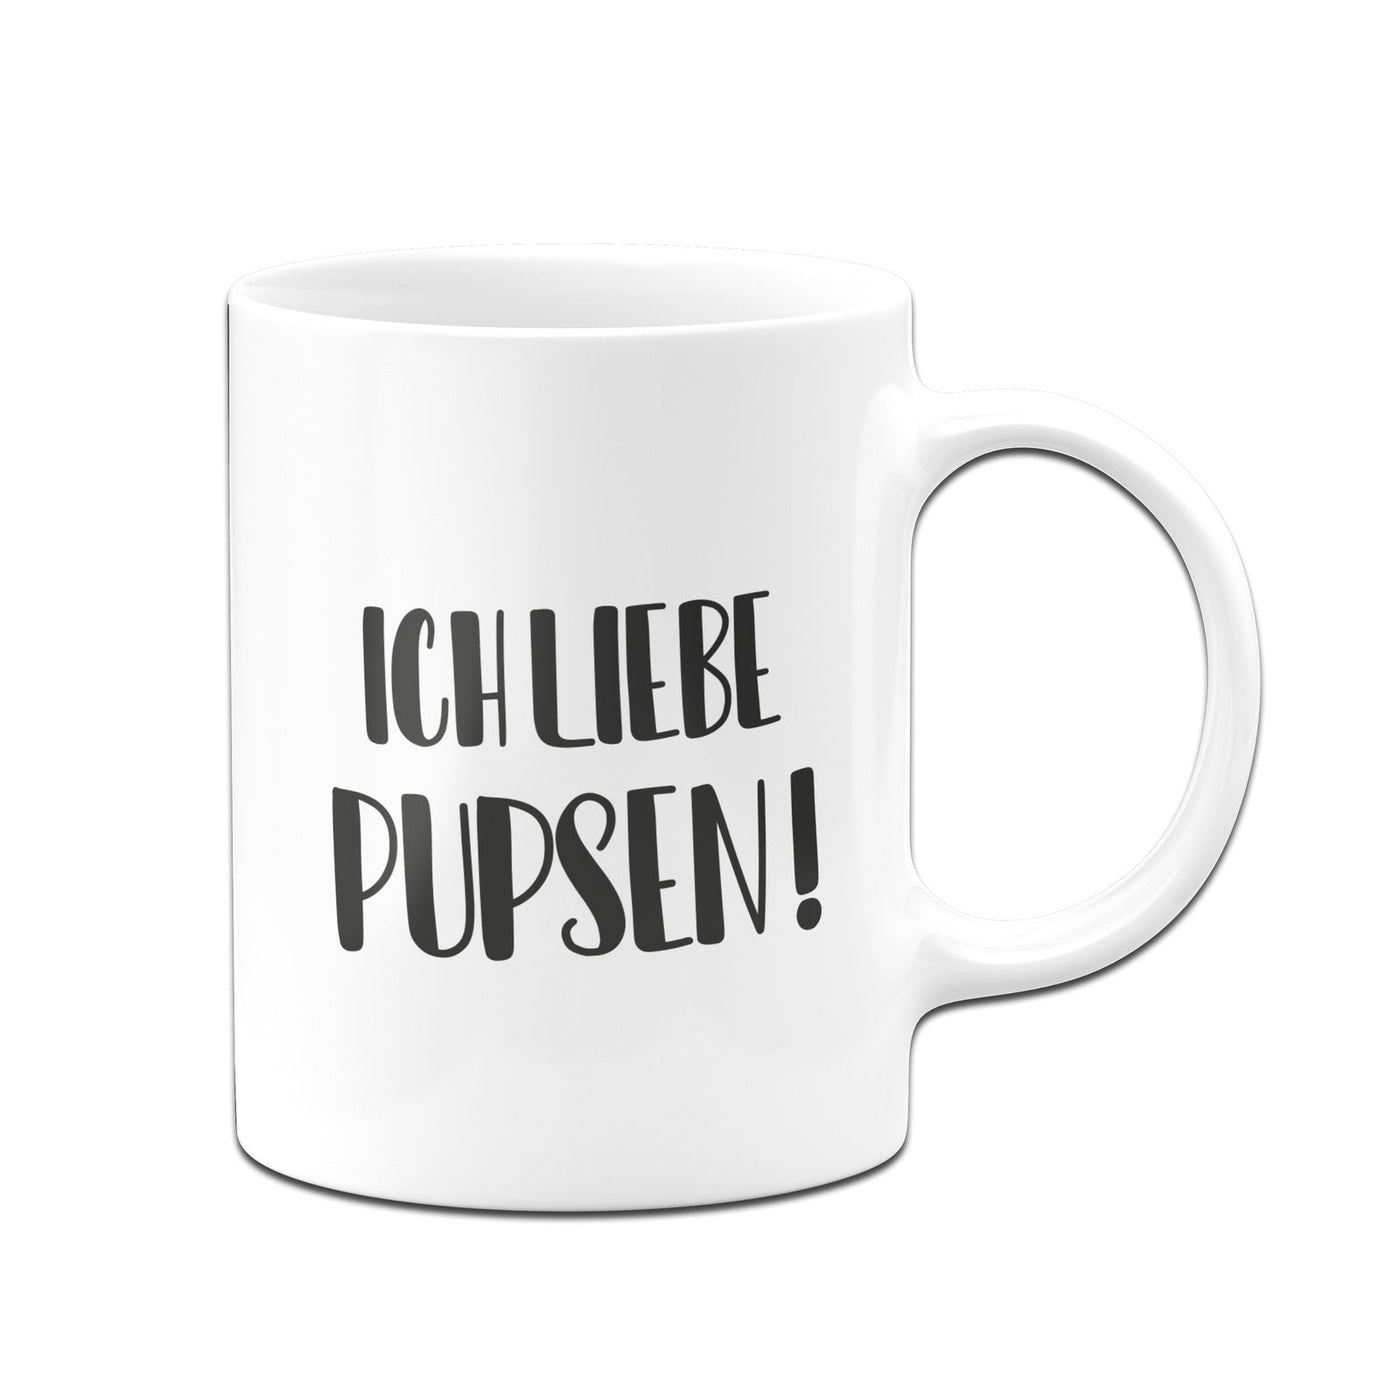 Bild: Tasse - Ich liebe Pupsen!- Pure Statement Geschenkidee